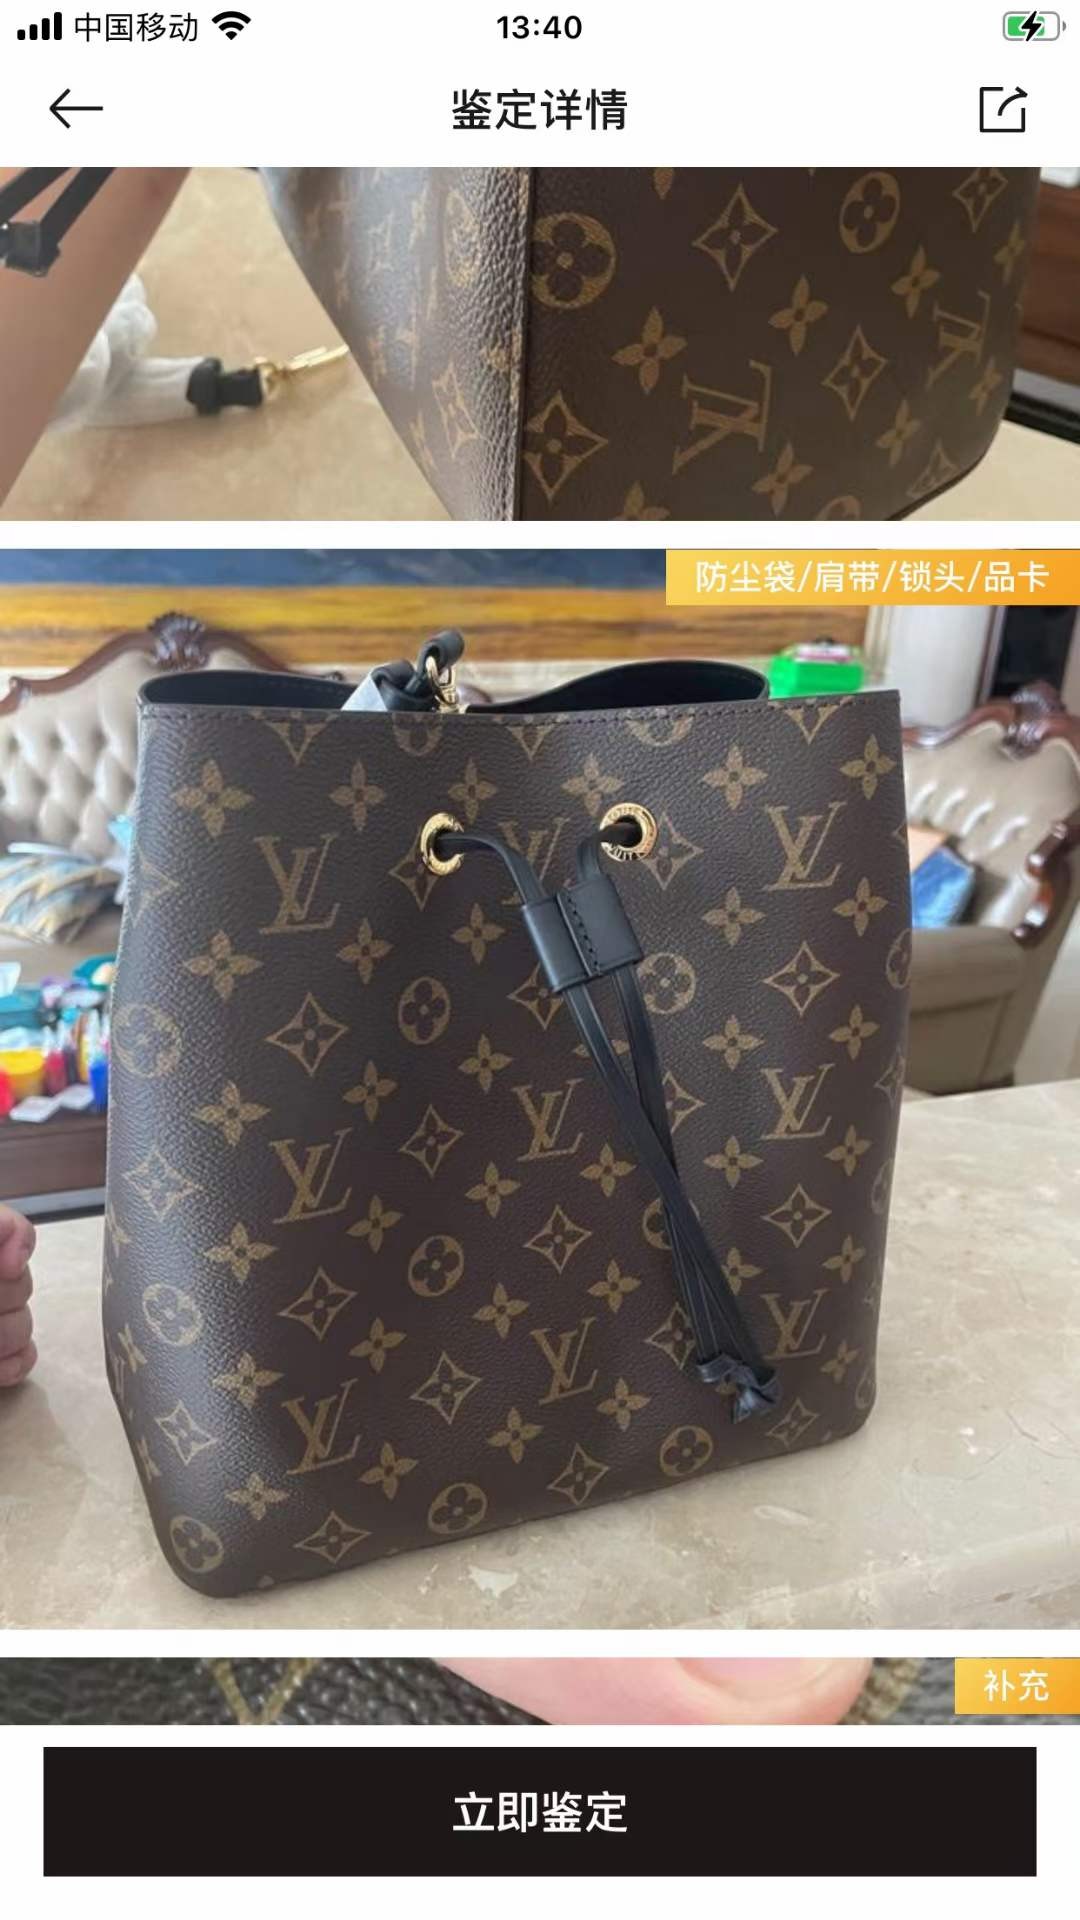 Louis Vuitton M44020 NÉONOÉ Top Replica Handbag Inspection Details (2022 Edition)-Bescht Qualitéit Fake Louis Vuitton Bag Online Store, Replica Designer Bag ru